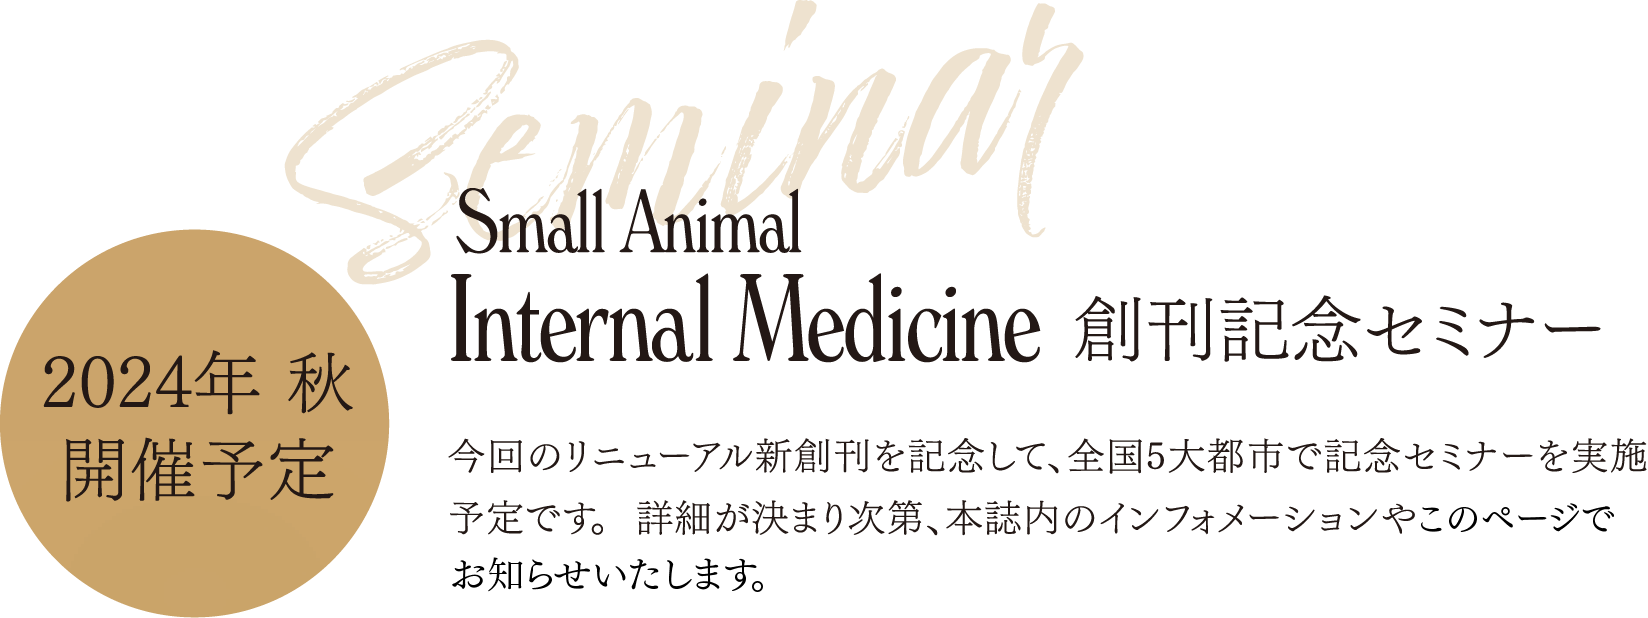 2024年秋開催予定 Small Animal Internal Medicine 創刊記念セミナー